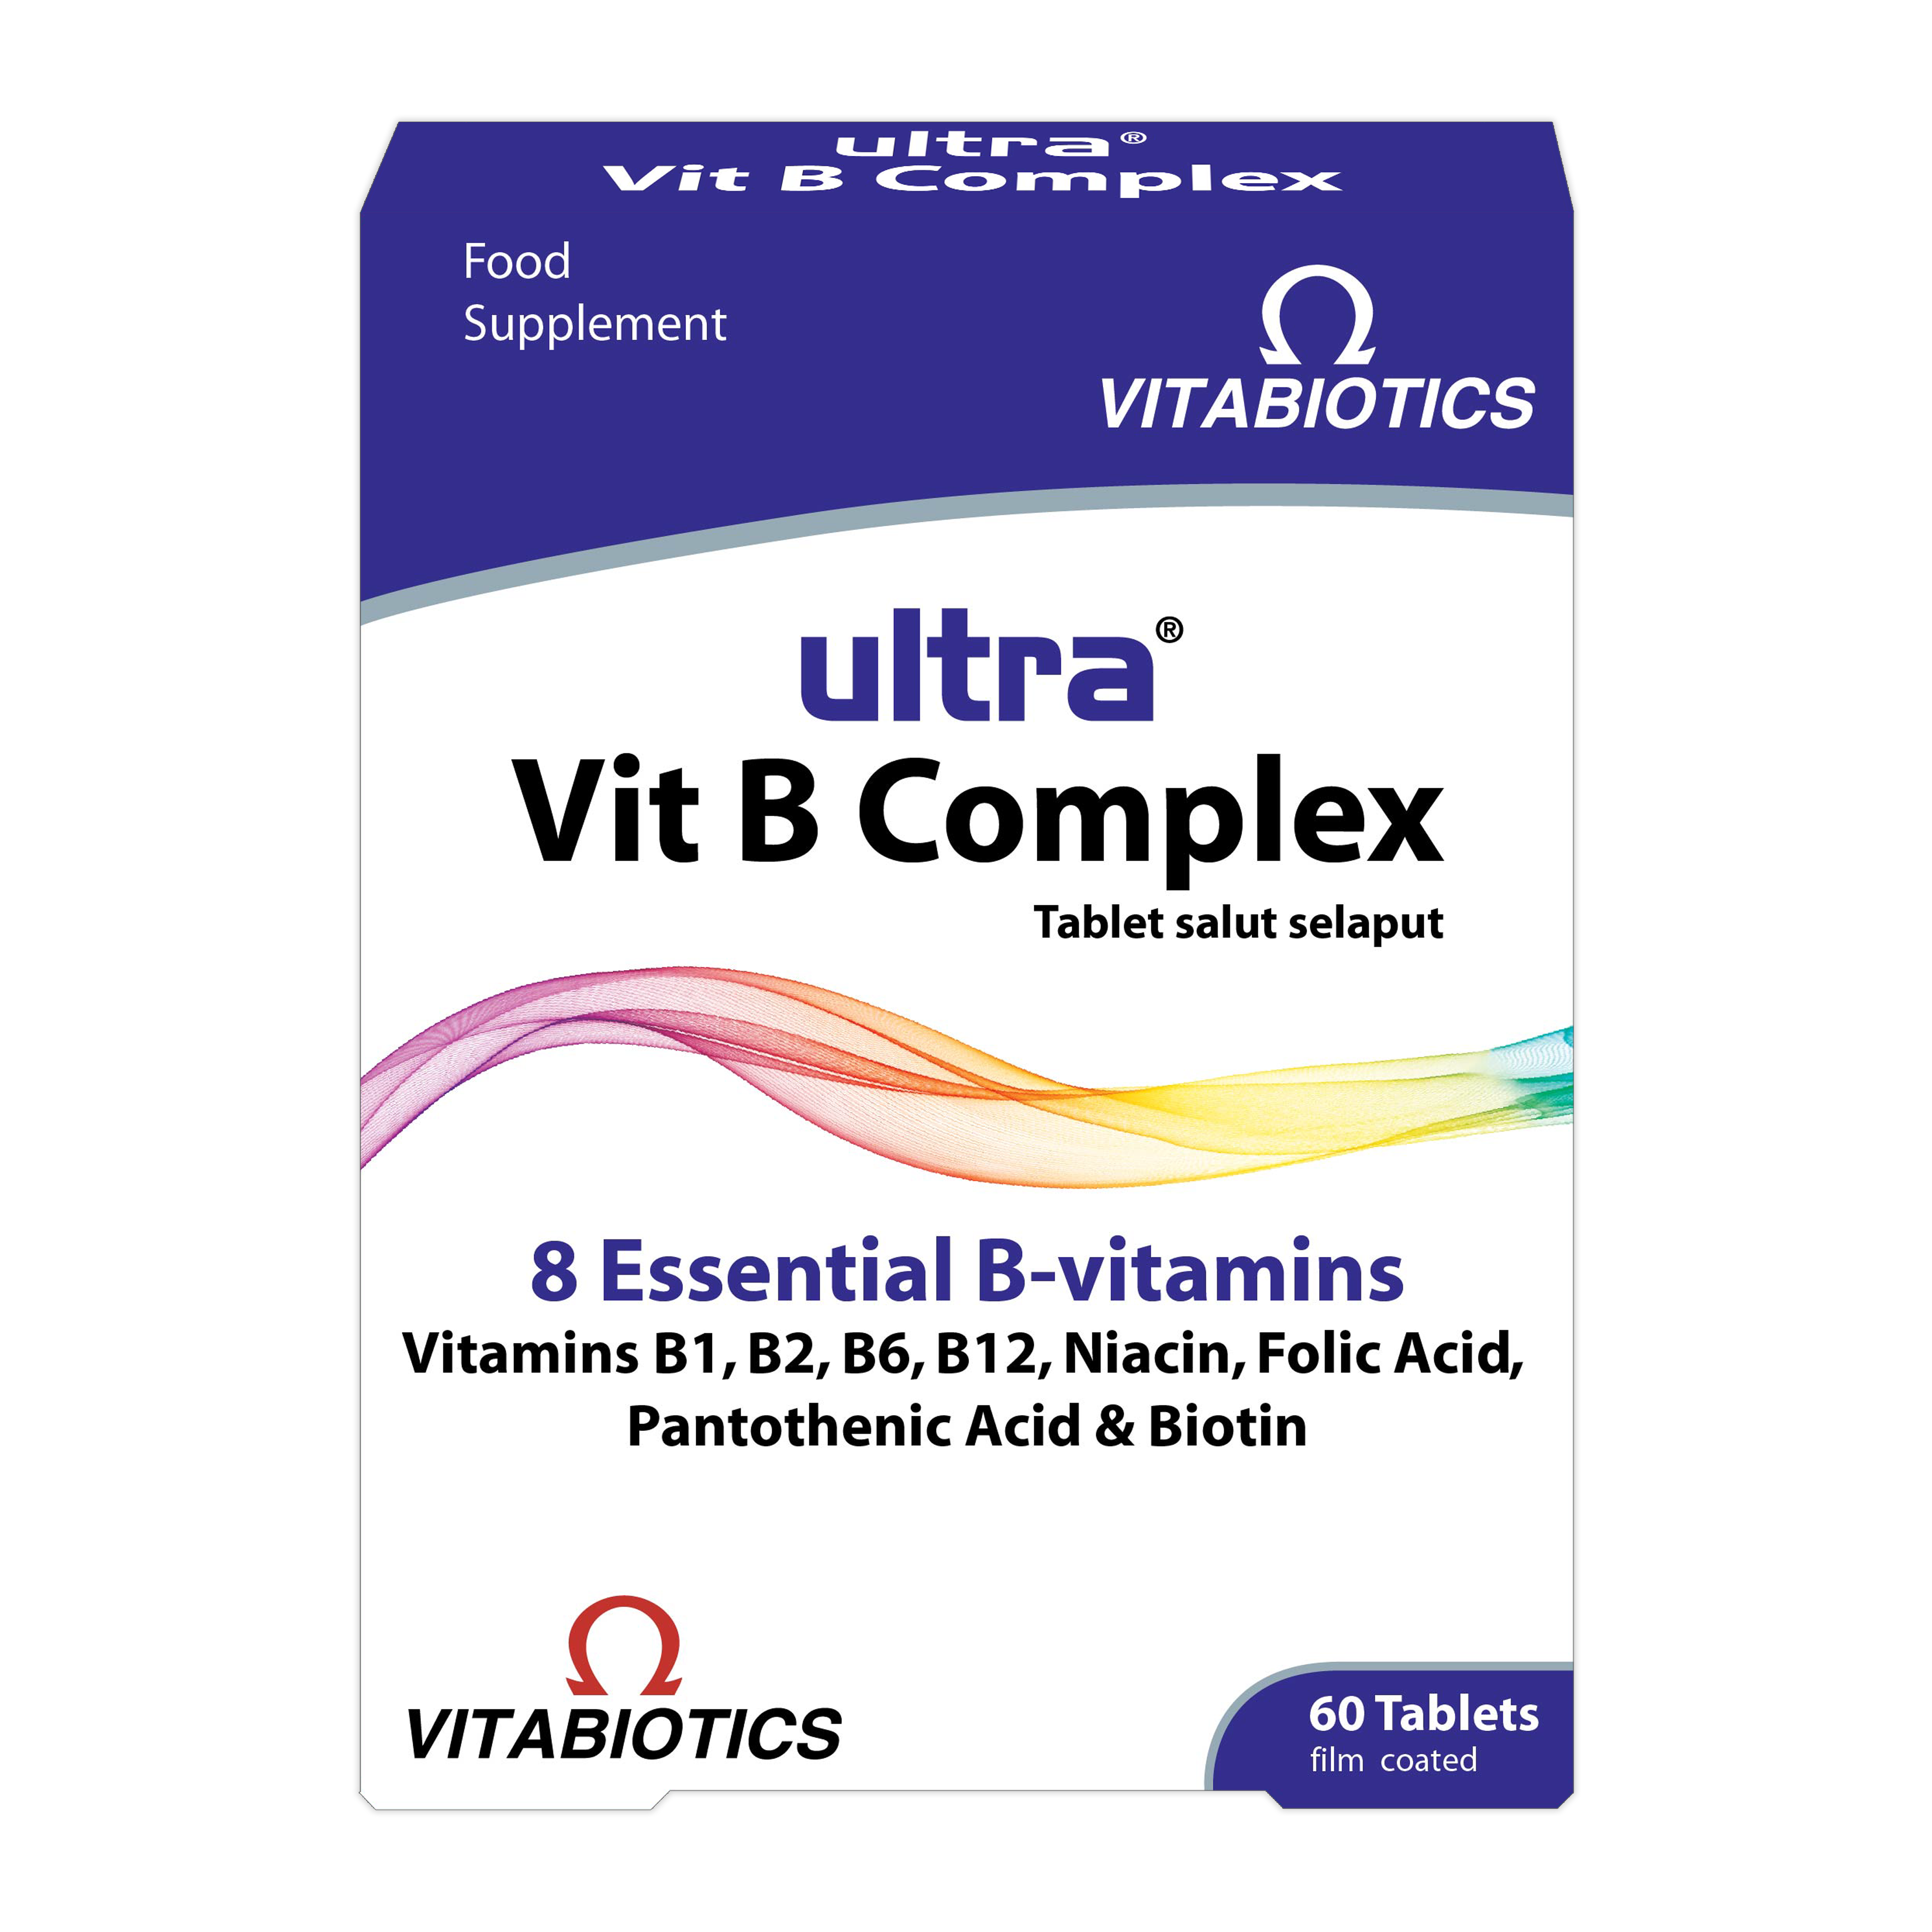 Ultra Vit B Complex